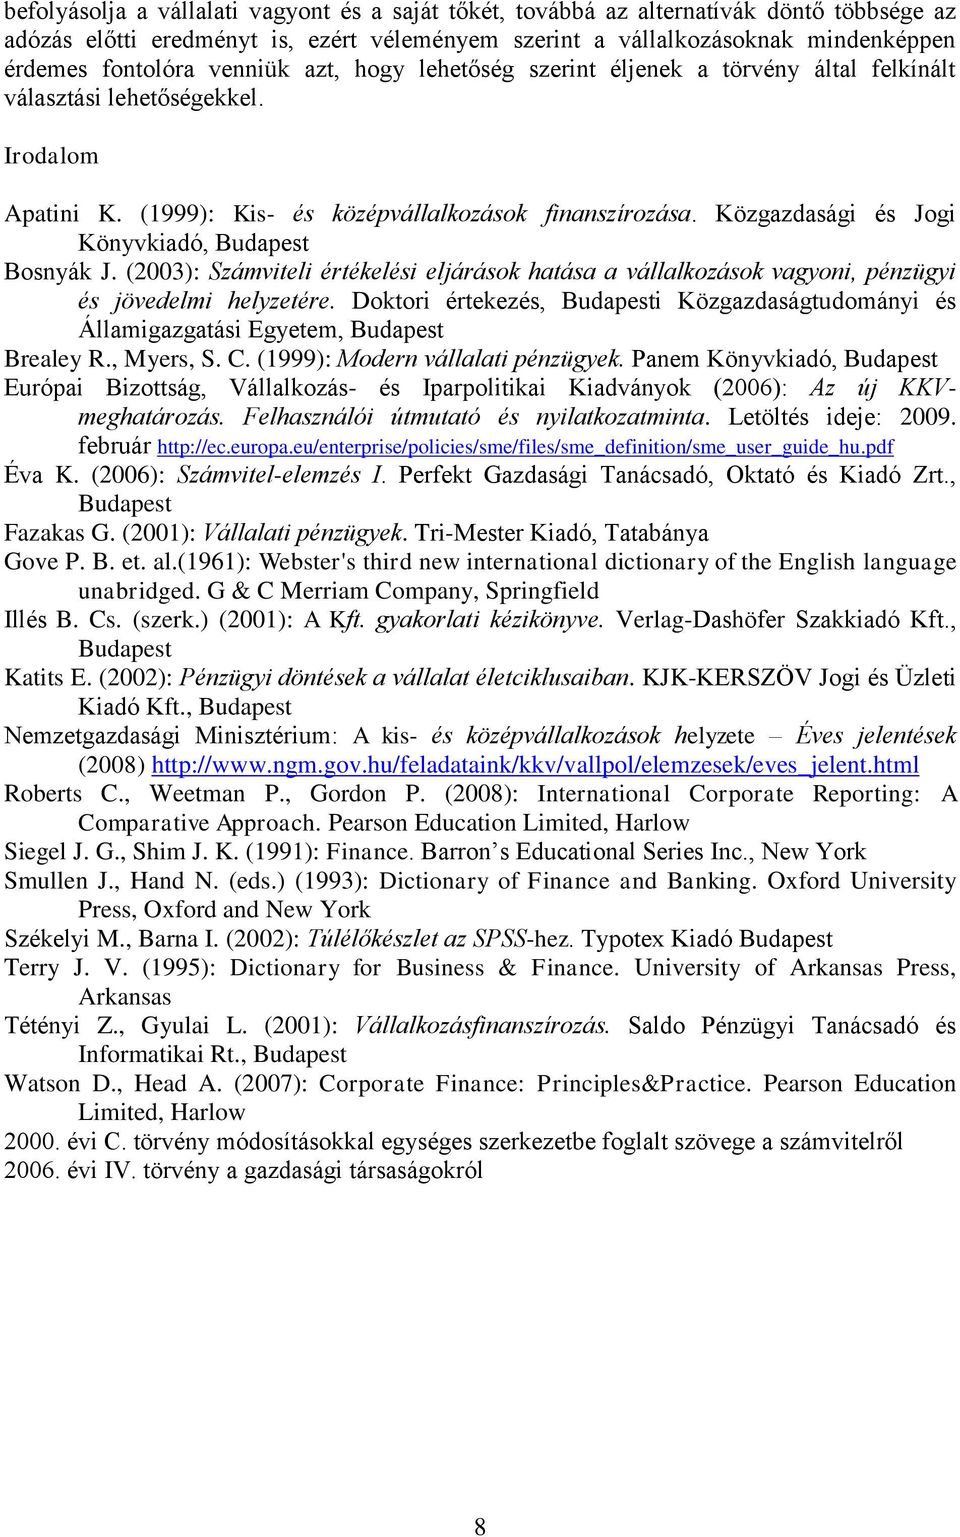 Közgazdasági és Jogi Könyvkiadó, Budapest Bosnyák J. (2003): Számviteli értékelési eljárások hatása a vállalkozások vagyoni, pénzügyi és jövedelmi helyzetére.